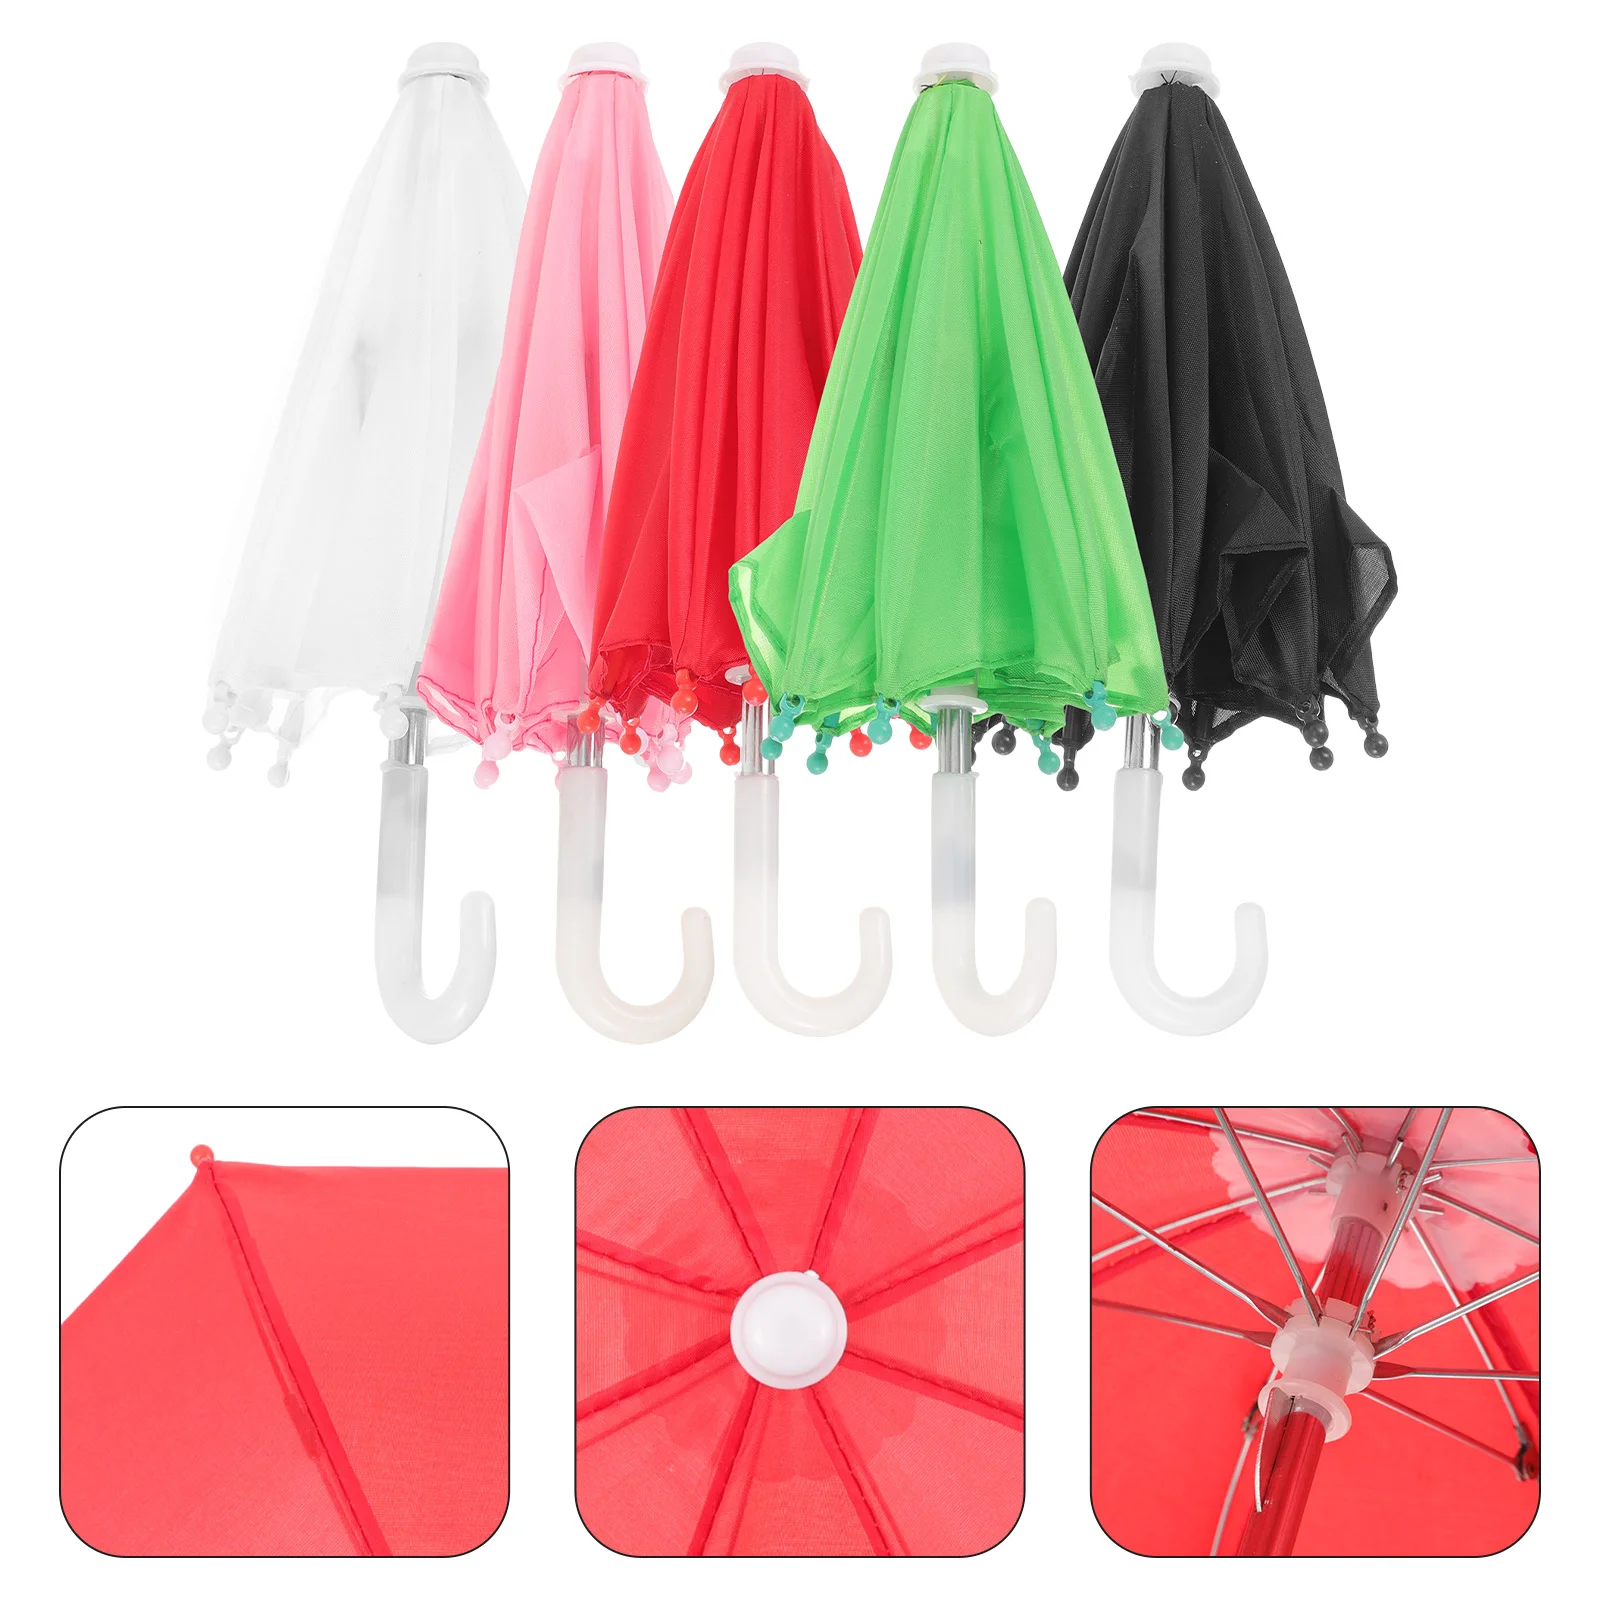 

5Pcs Decorative Umbrellas Miniature Umbrella Decors Adorable Umbrella Models